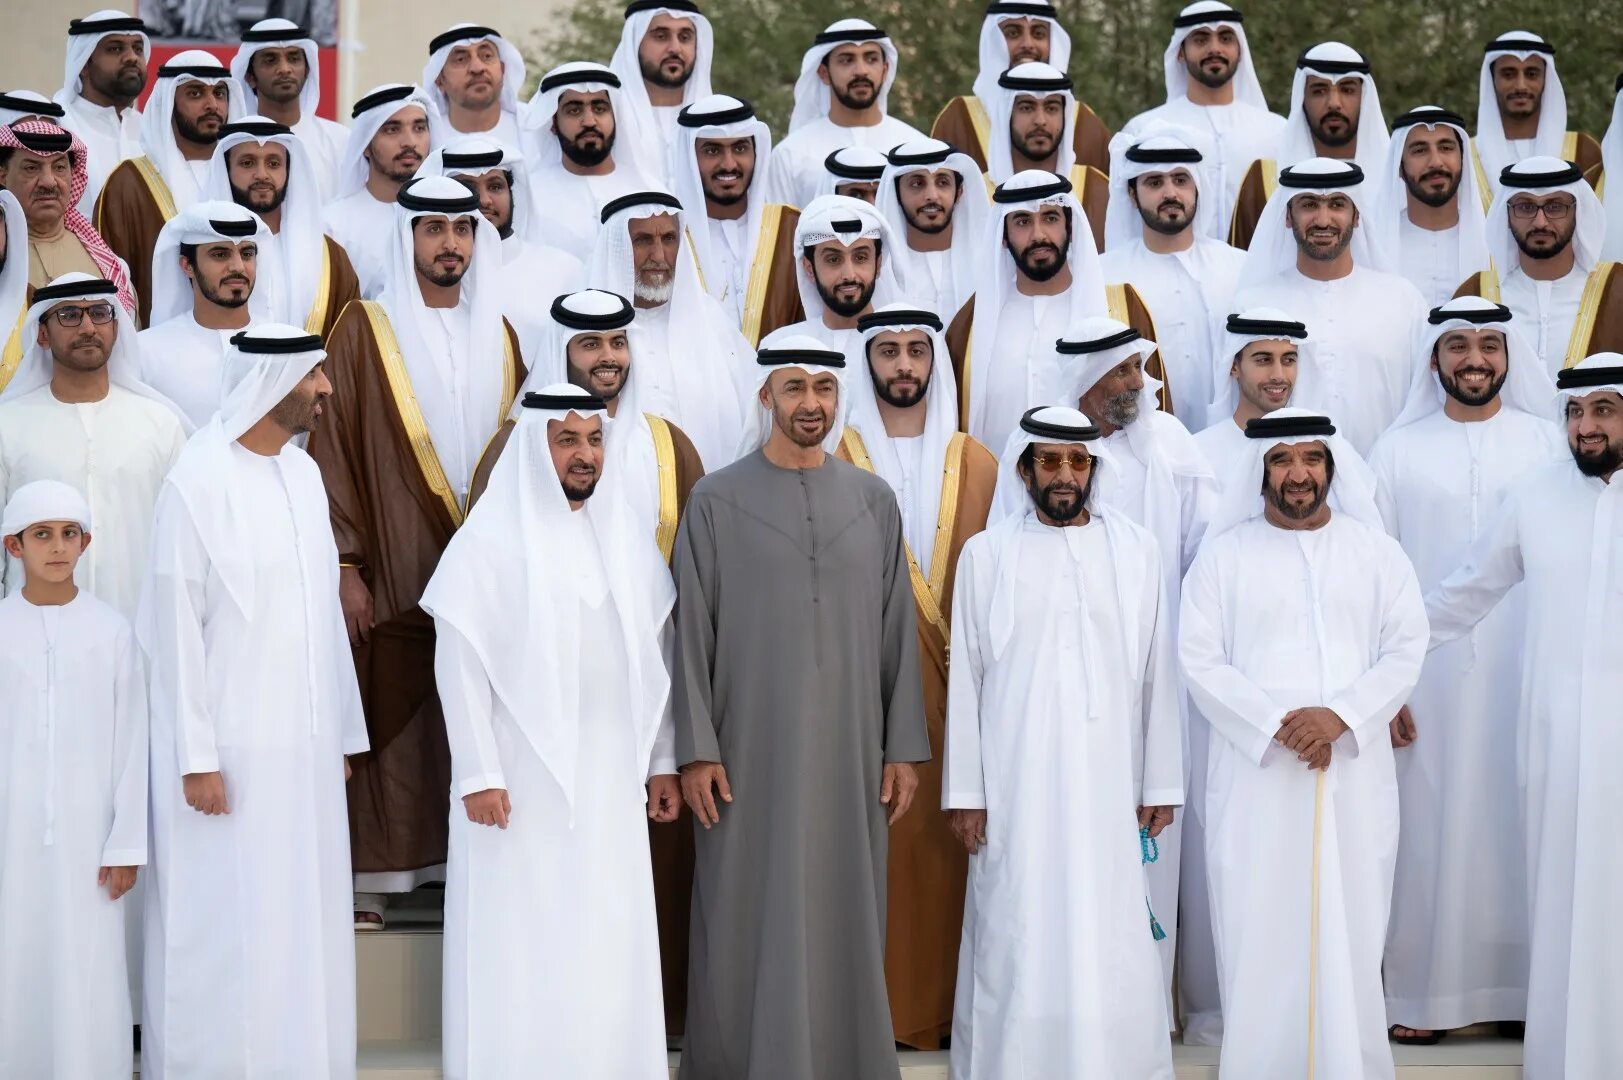 Зайеда аль нахайяна. Семья Аль Нахайян. Hazza bin Zayed al Nahyan.